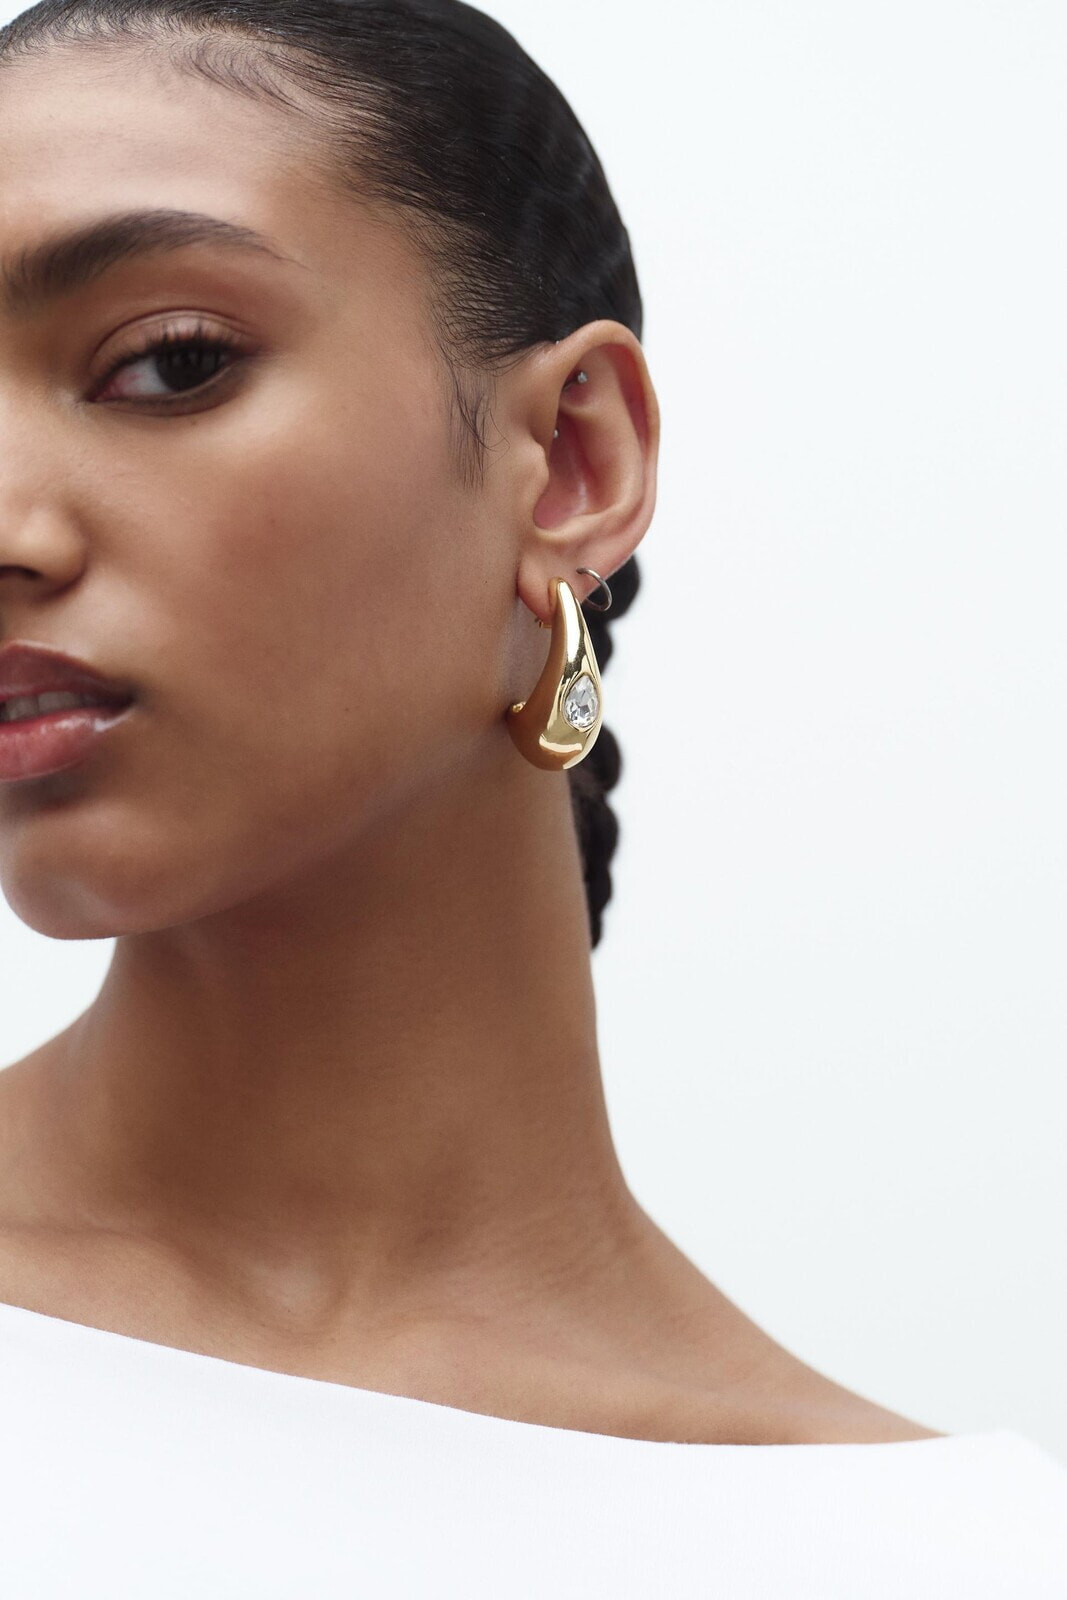 Metal rhinestone earrings